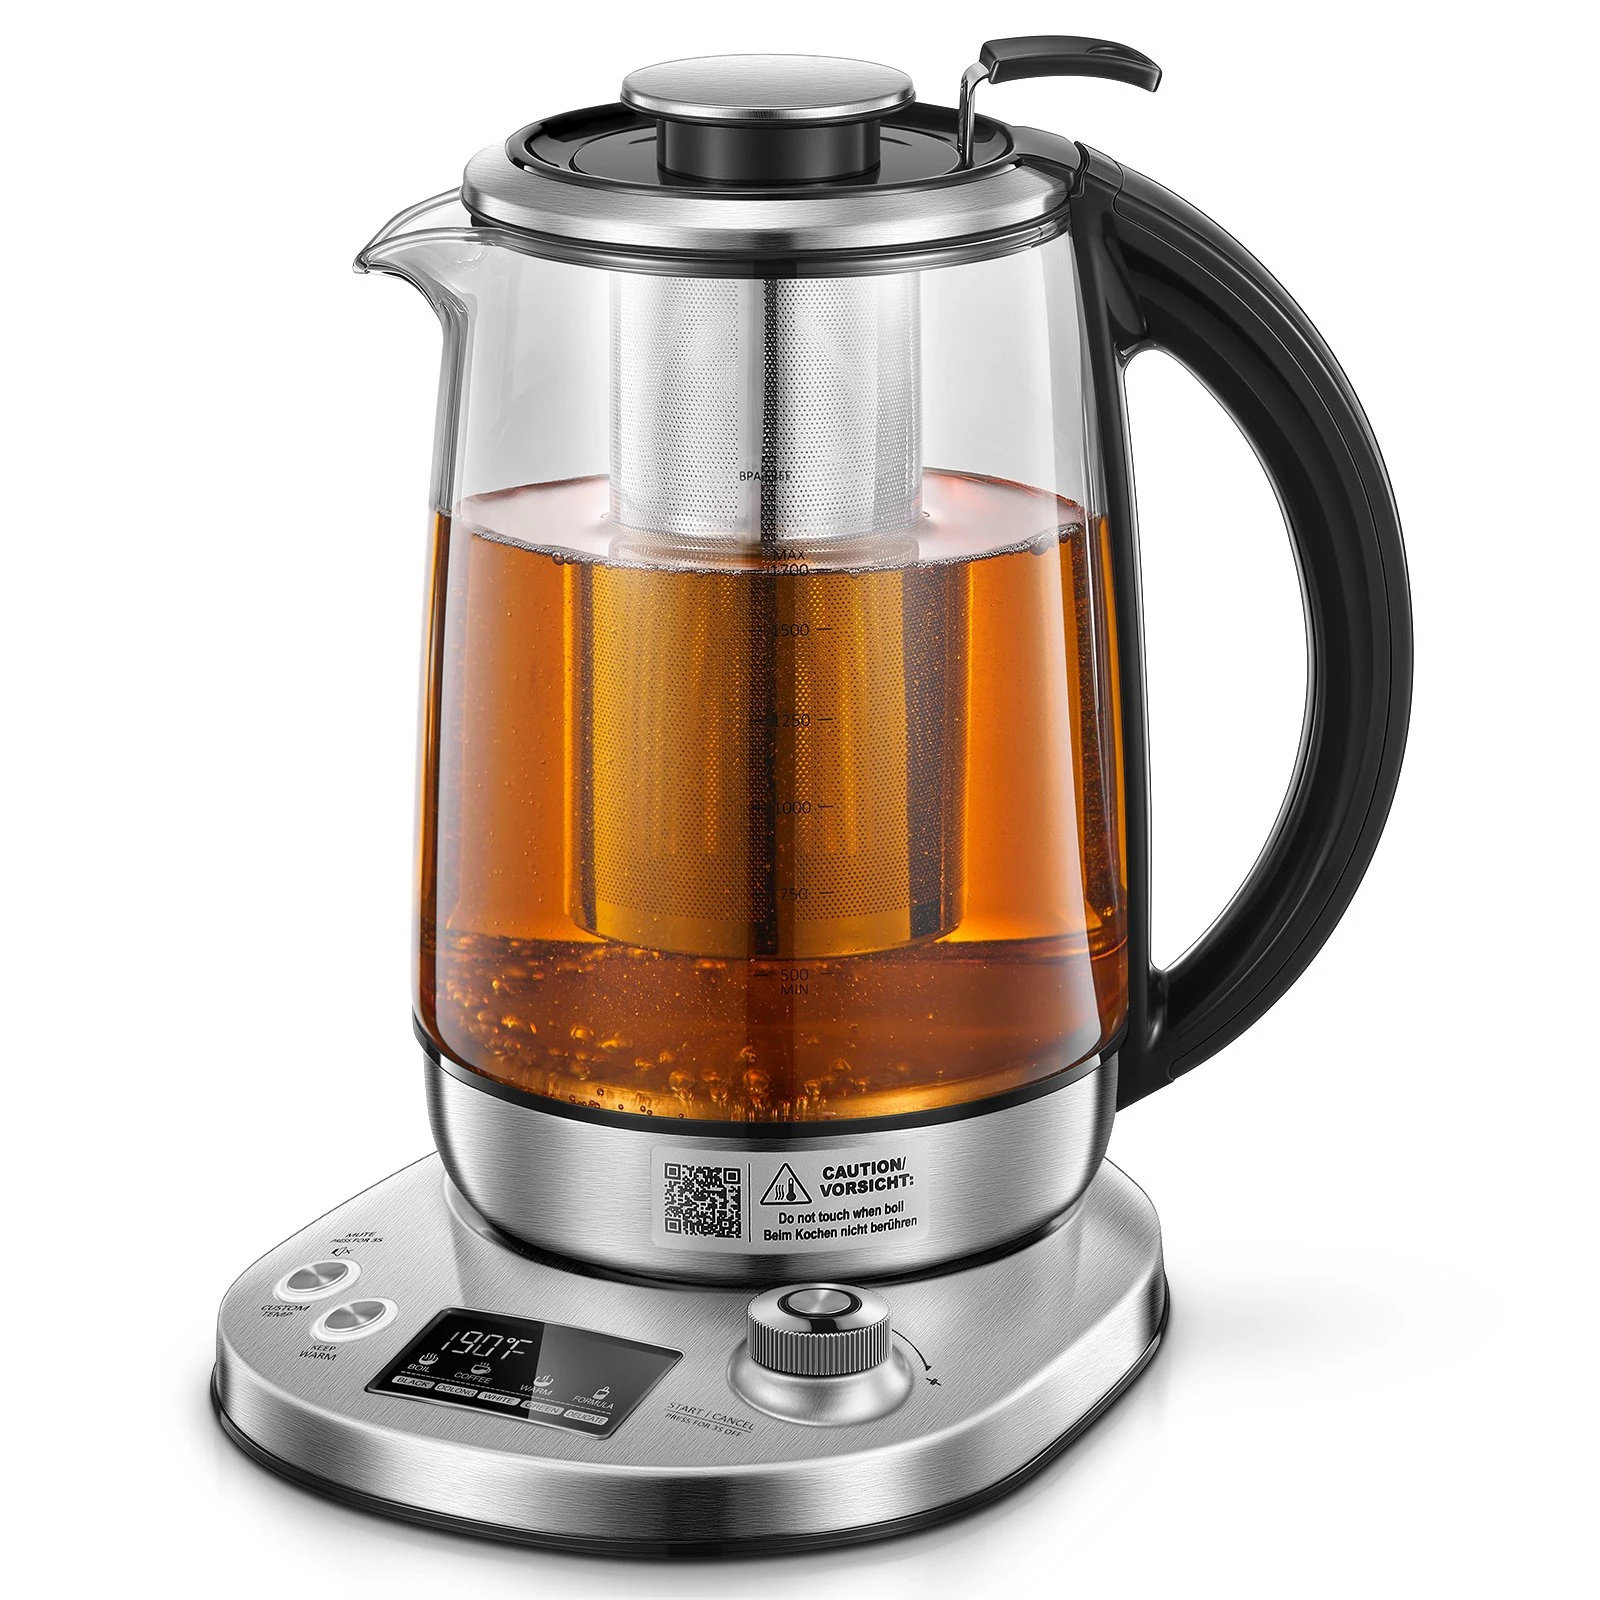 https://assets.wfcdn.com/im/80196500/compr-r85/2405/240557874/binnbox-18-quarts-stainless-steel-electric-tea-kettle.jpg